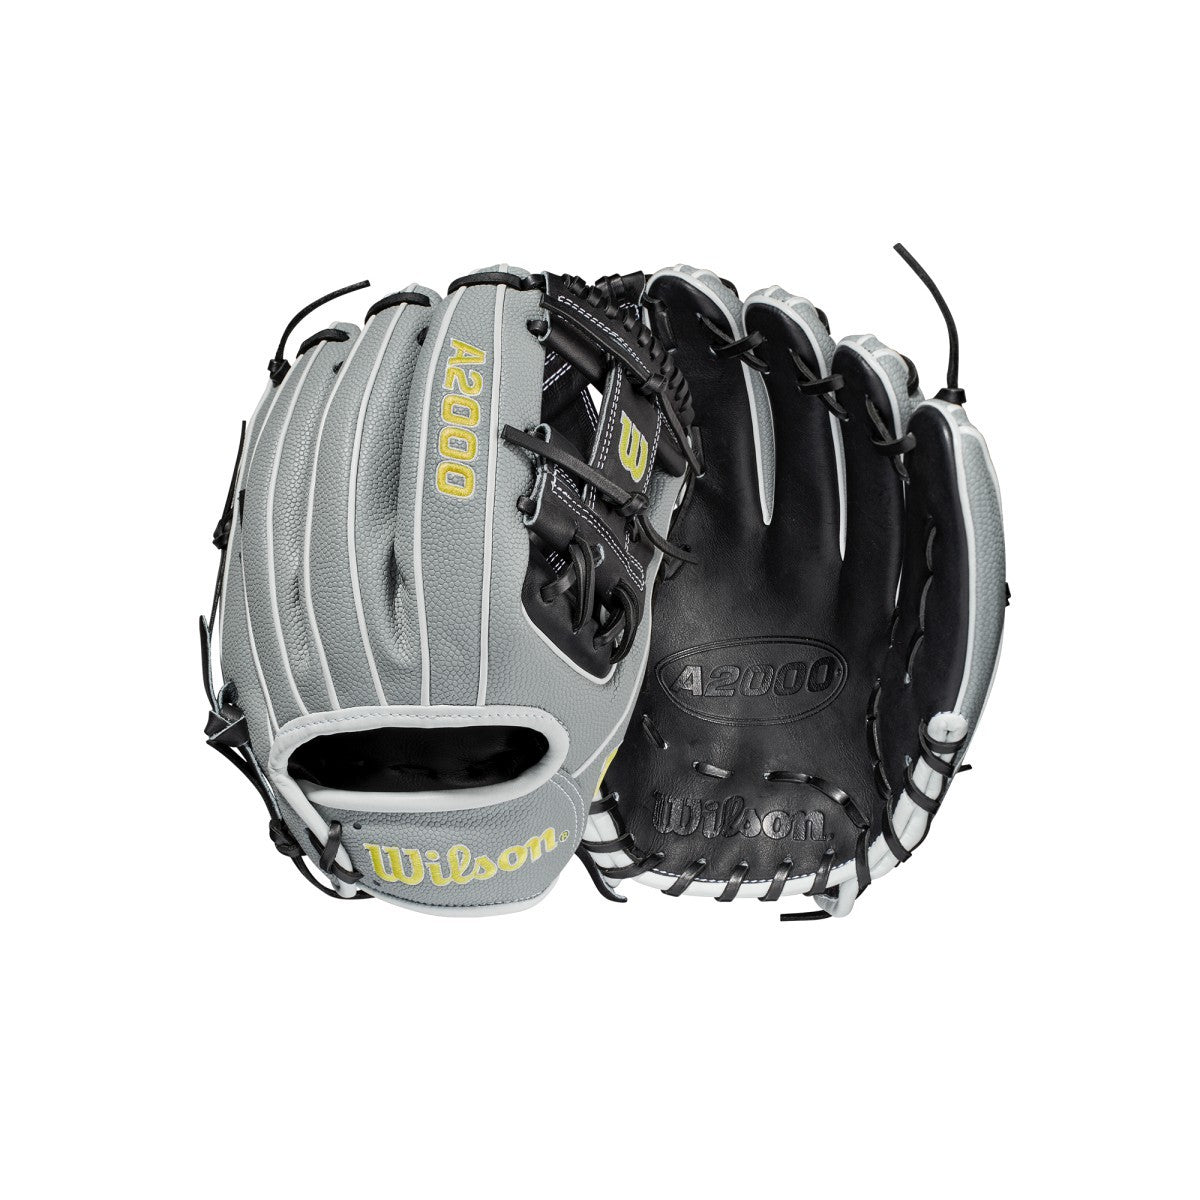 Wilson A2K Juan Soto 12.75 Baseball Glove: WBW1010101275